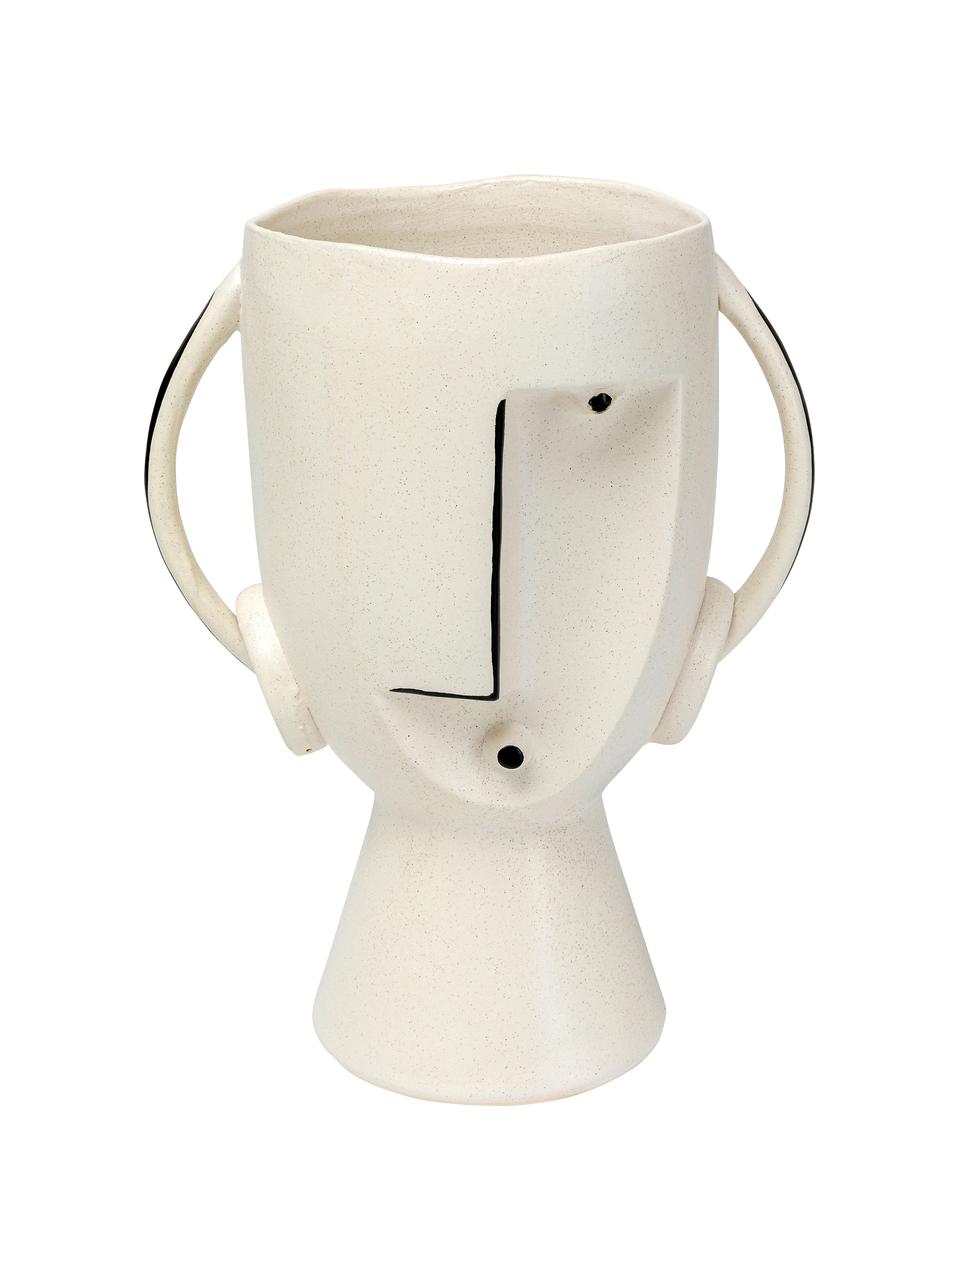 Grand vase design blanc Face, Grès cérame, Blanc, noir, larg. 23 x haut. 30 cm